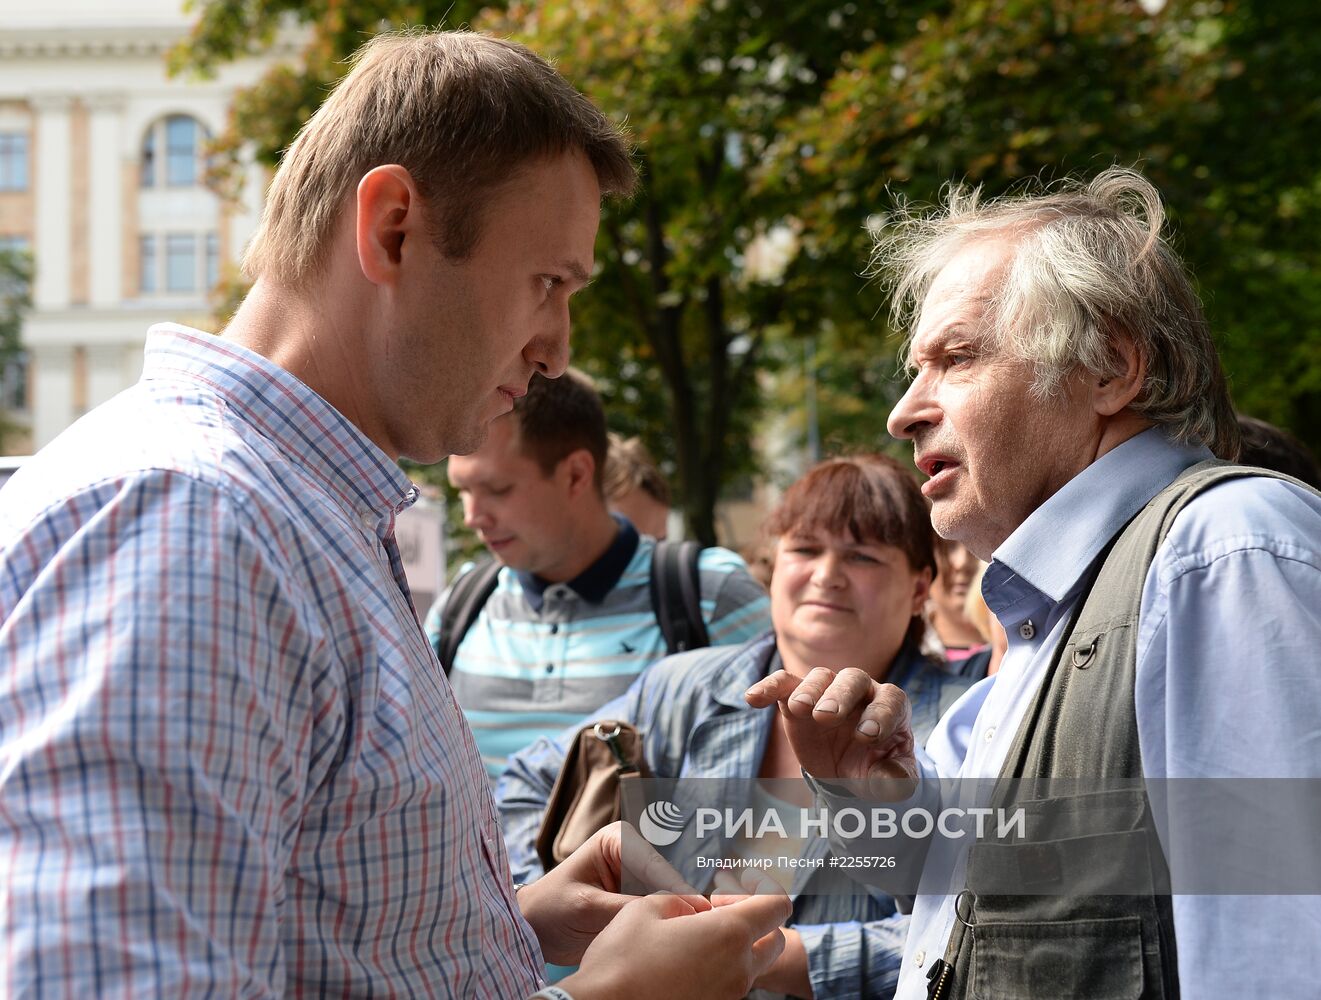 Кандидат в мэры Москвы Алексей Навальный встретился с избирателя